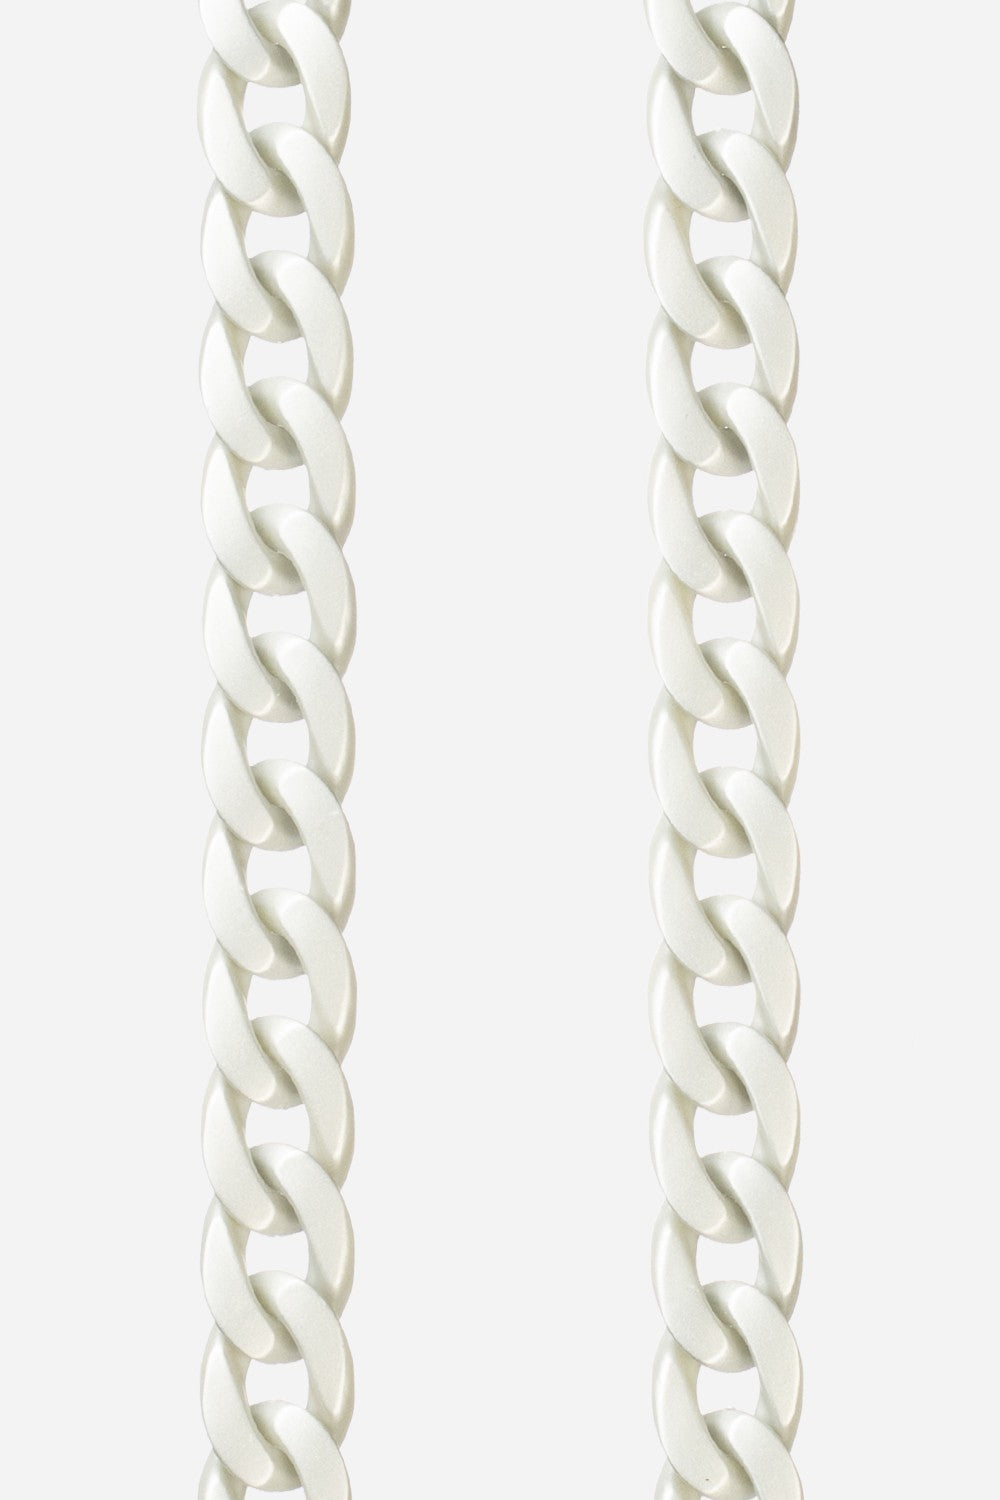 Chaine Longue Sarah Argent 120 cm